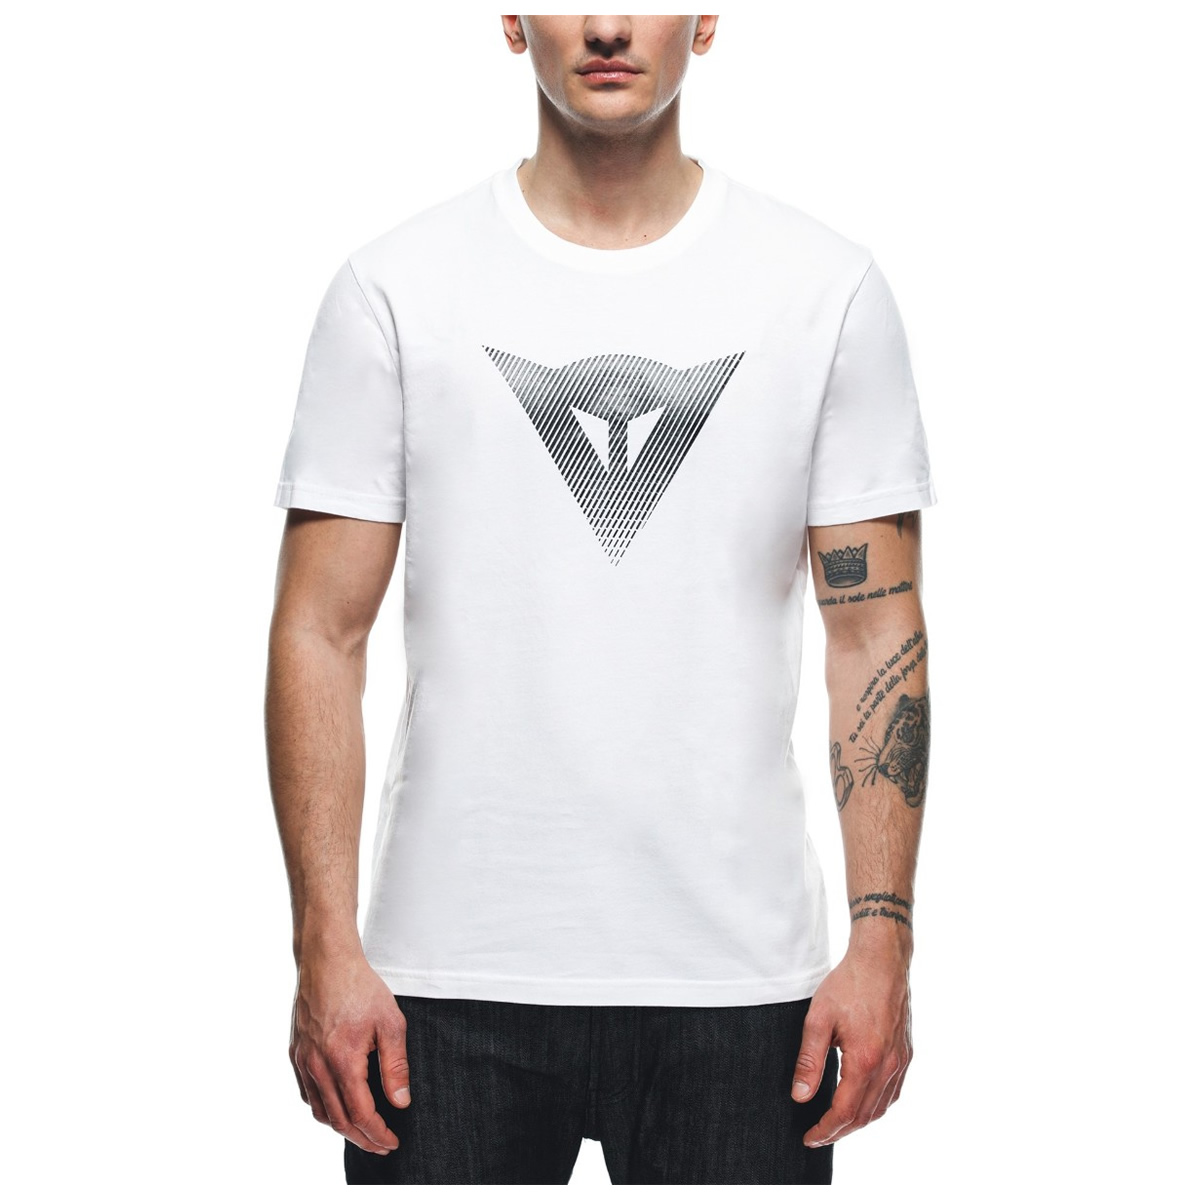 Dainese T-Shirt Logo, weiß-schwarz